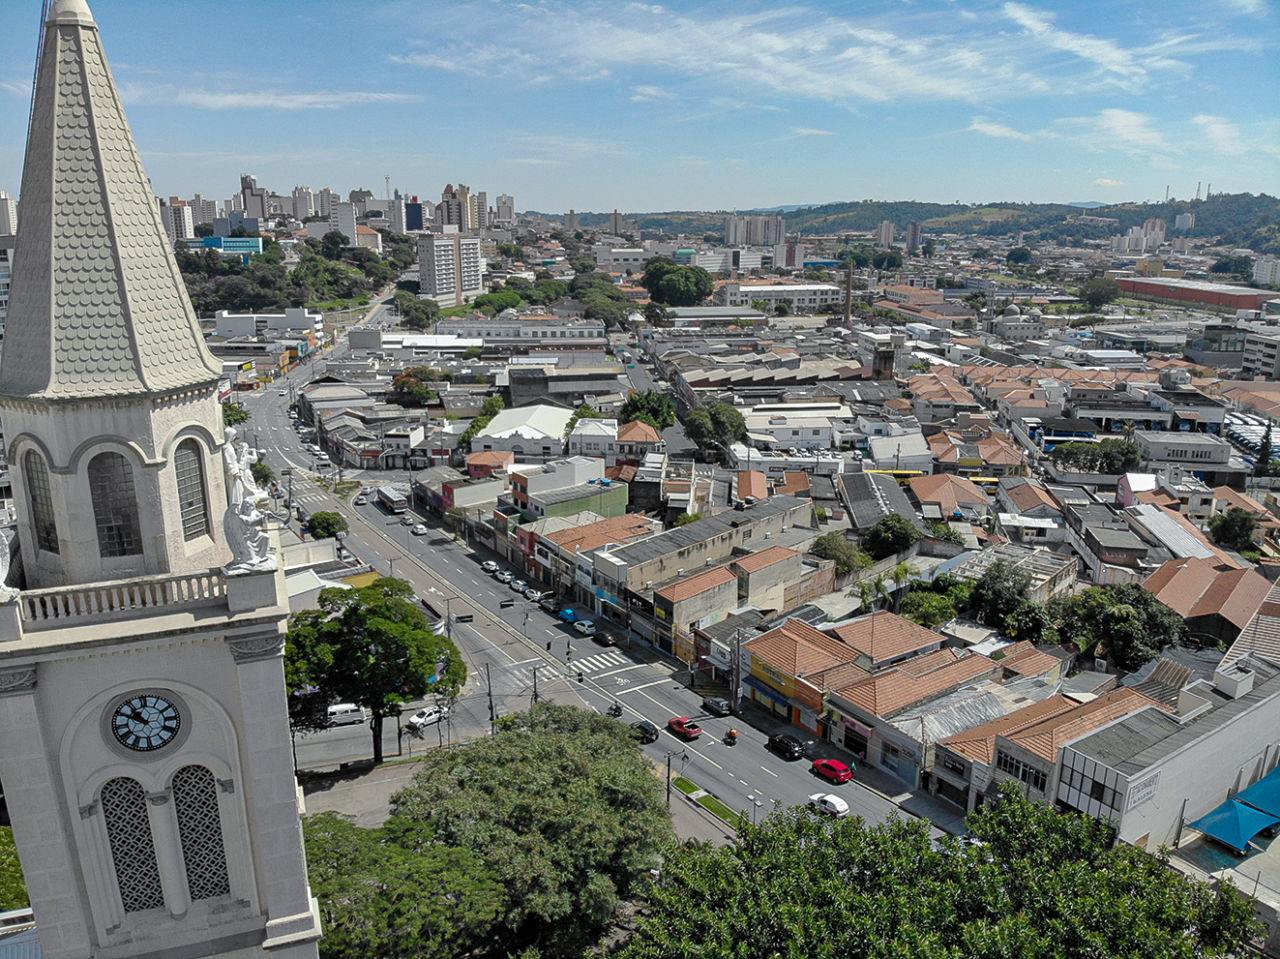 Foto aérea do bairro da vila Arens de Jundiaí, em que se veem a torre da igreja à esquerda e as ruas, telhados e copas das árvores